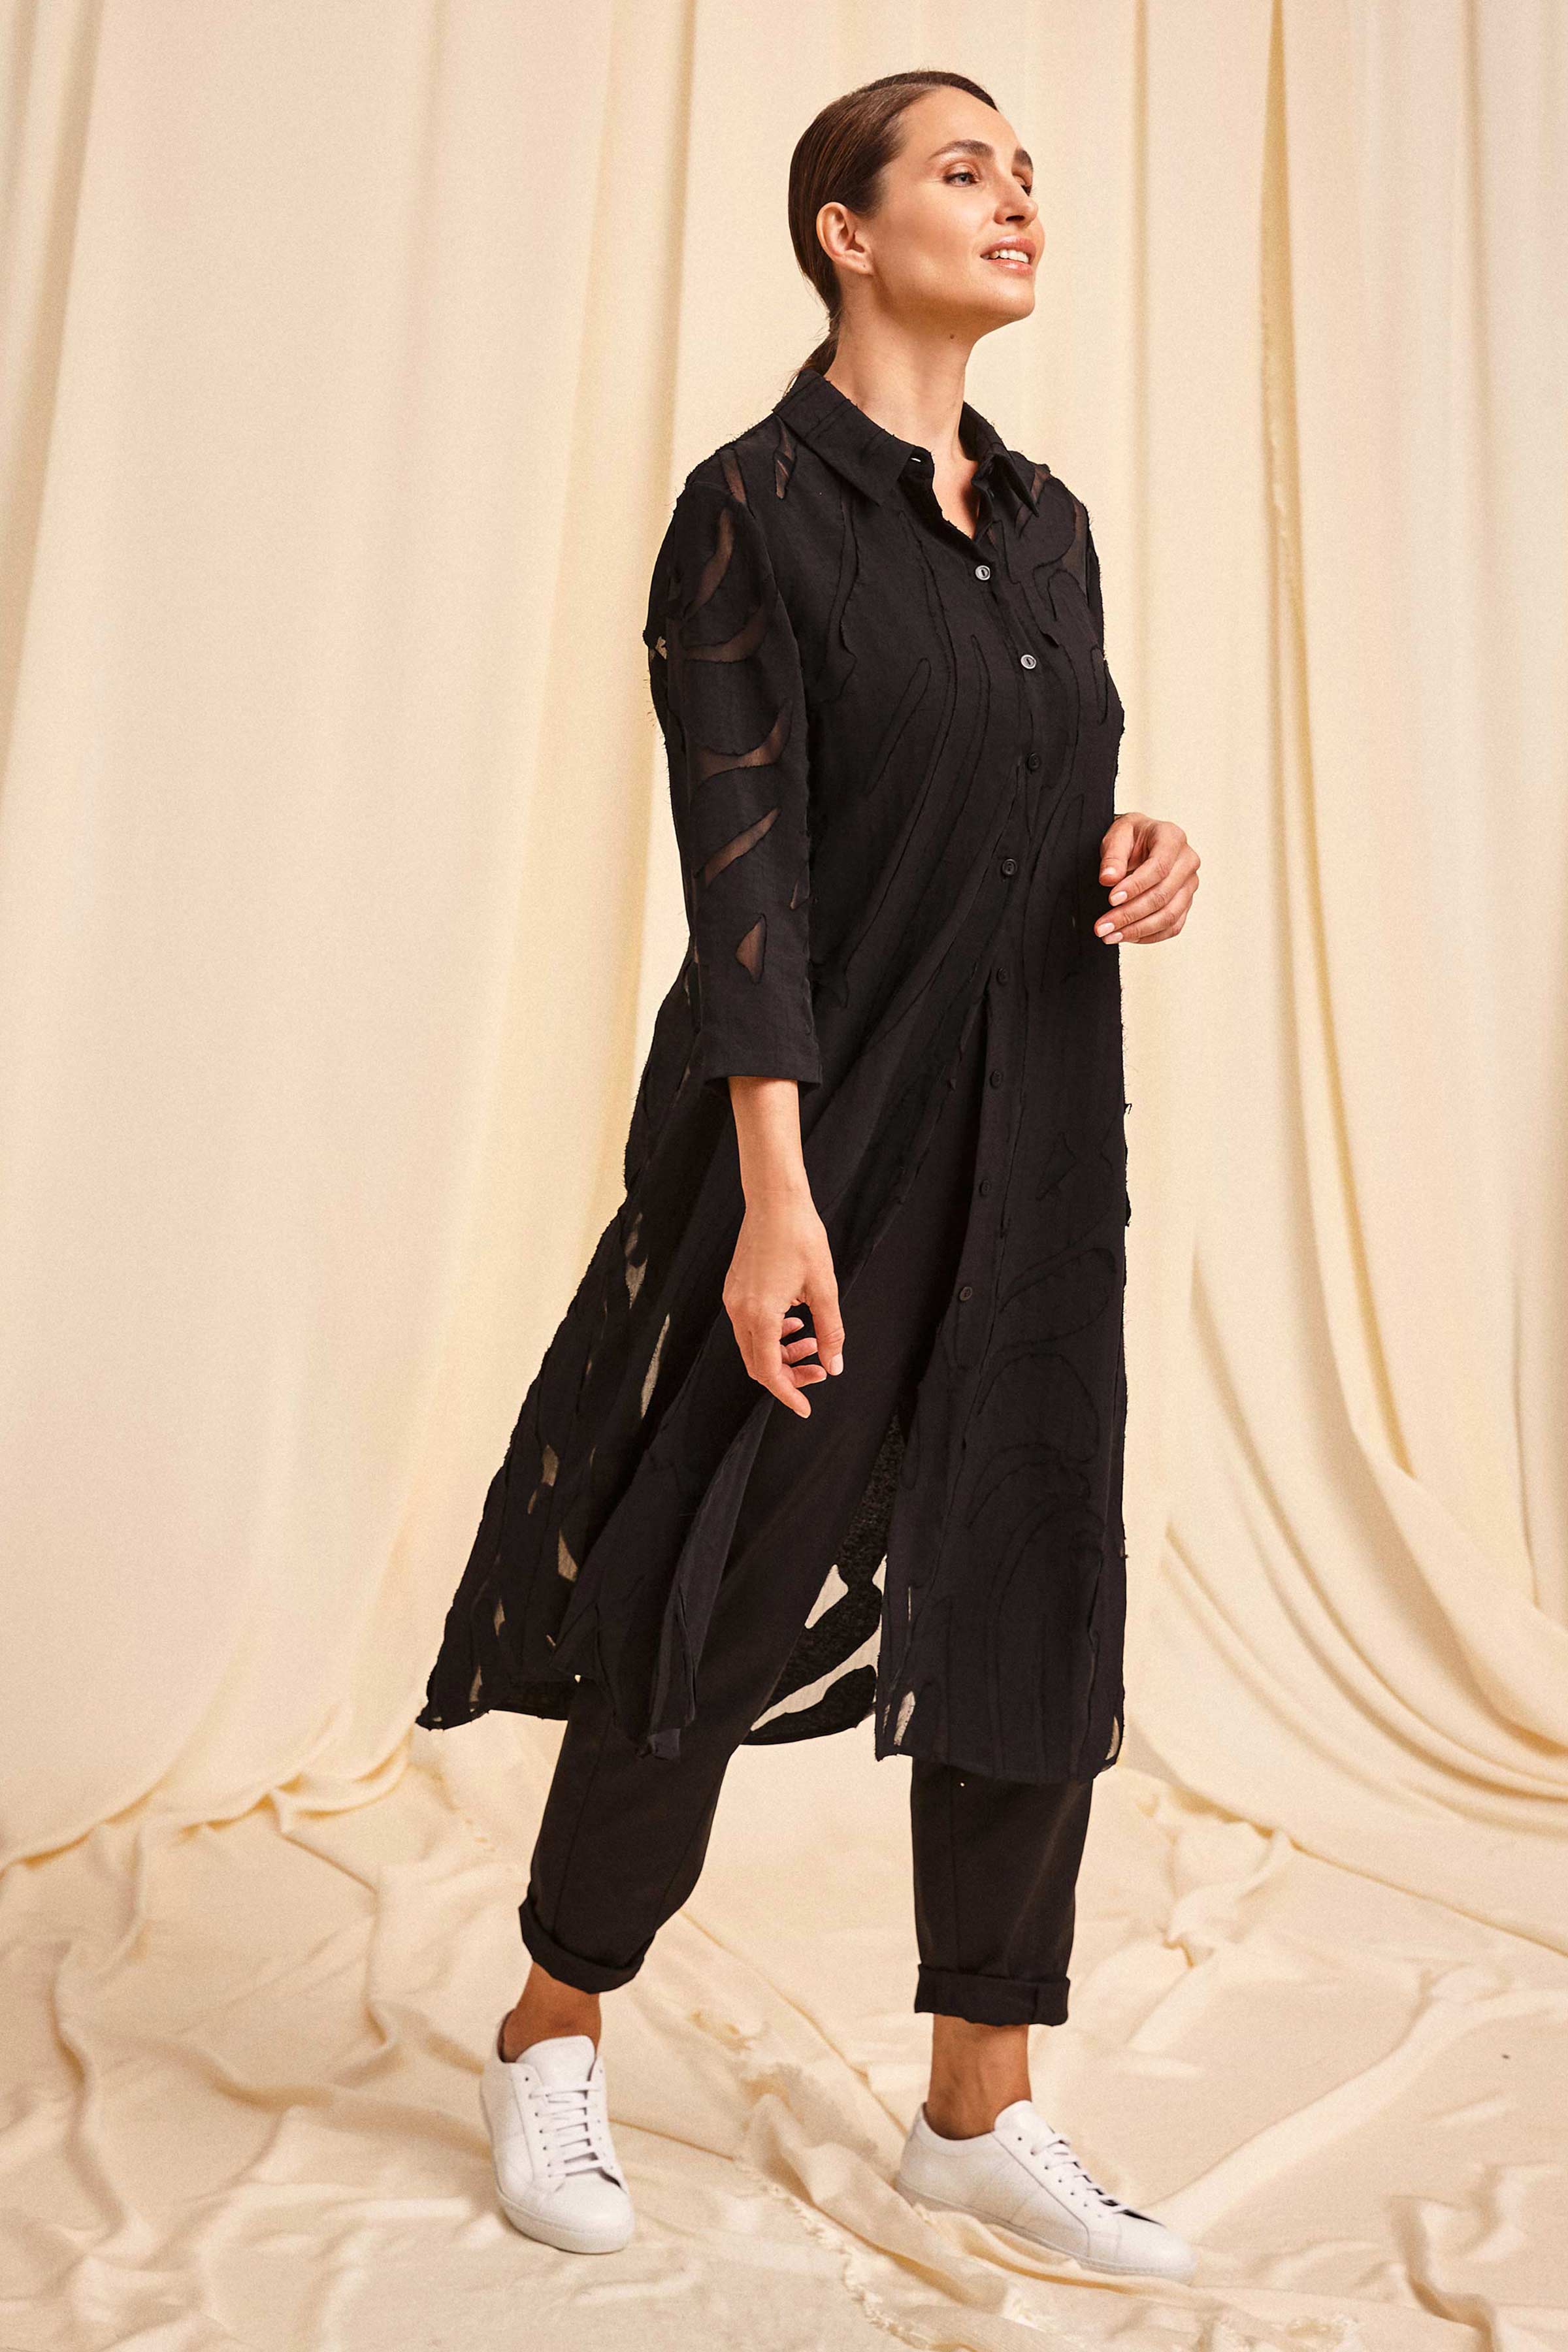 Блуза Джунгли, рубашка удлинённая 00 Черный (noir) от Lesel (Лесель)! Заказывайте по ✆ 8 (800) 777 02 37